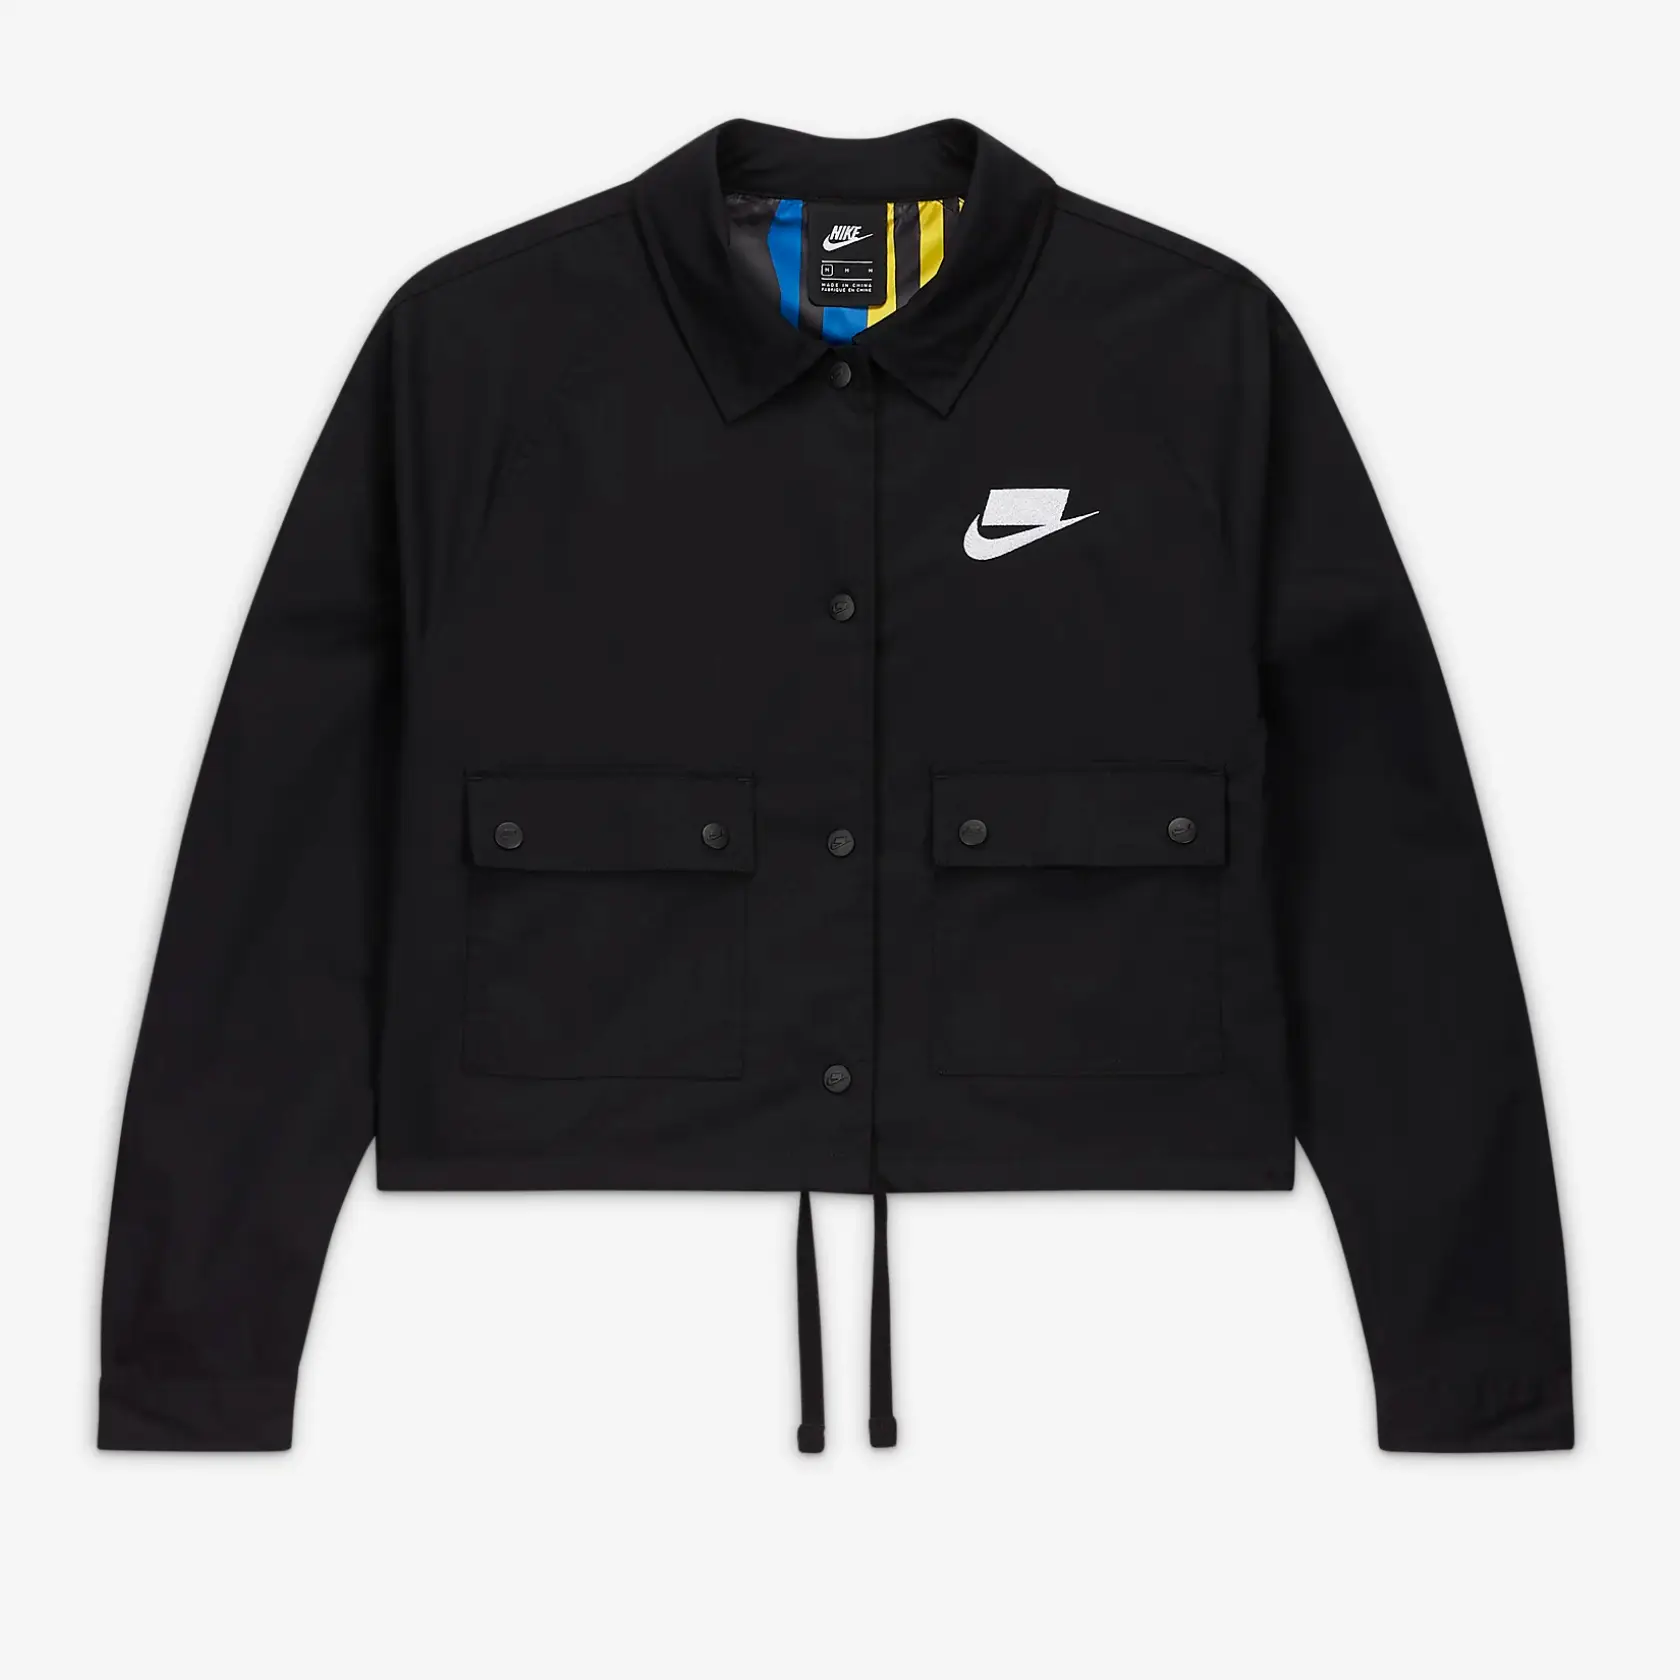 Nike Sportswear NSW Jacket Black